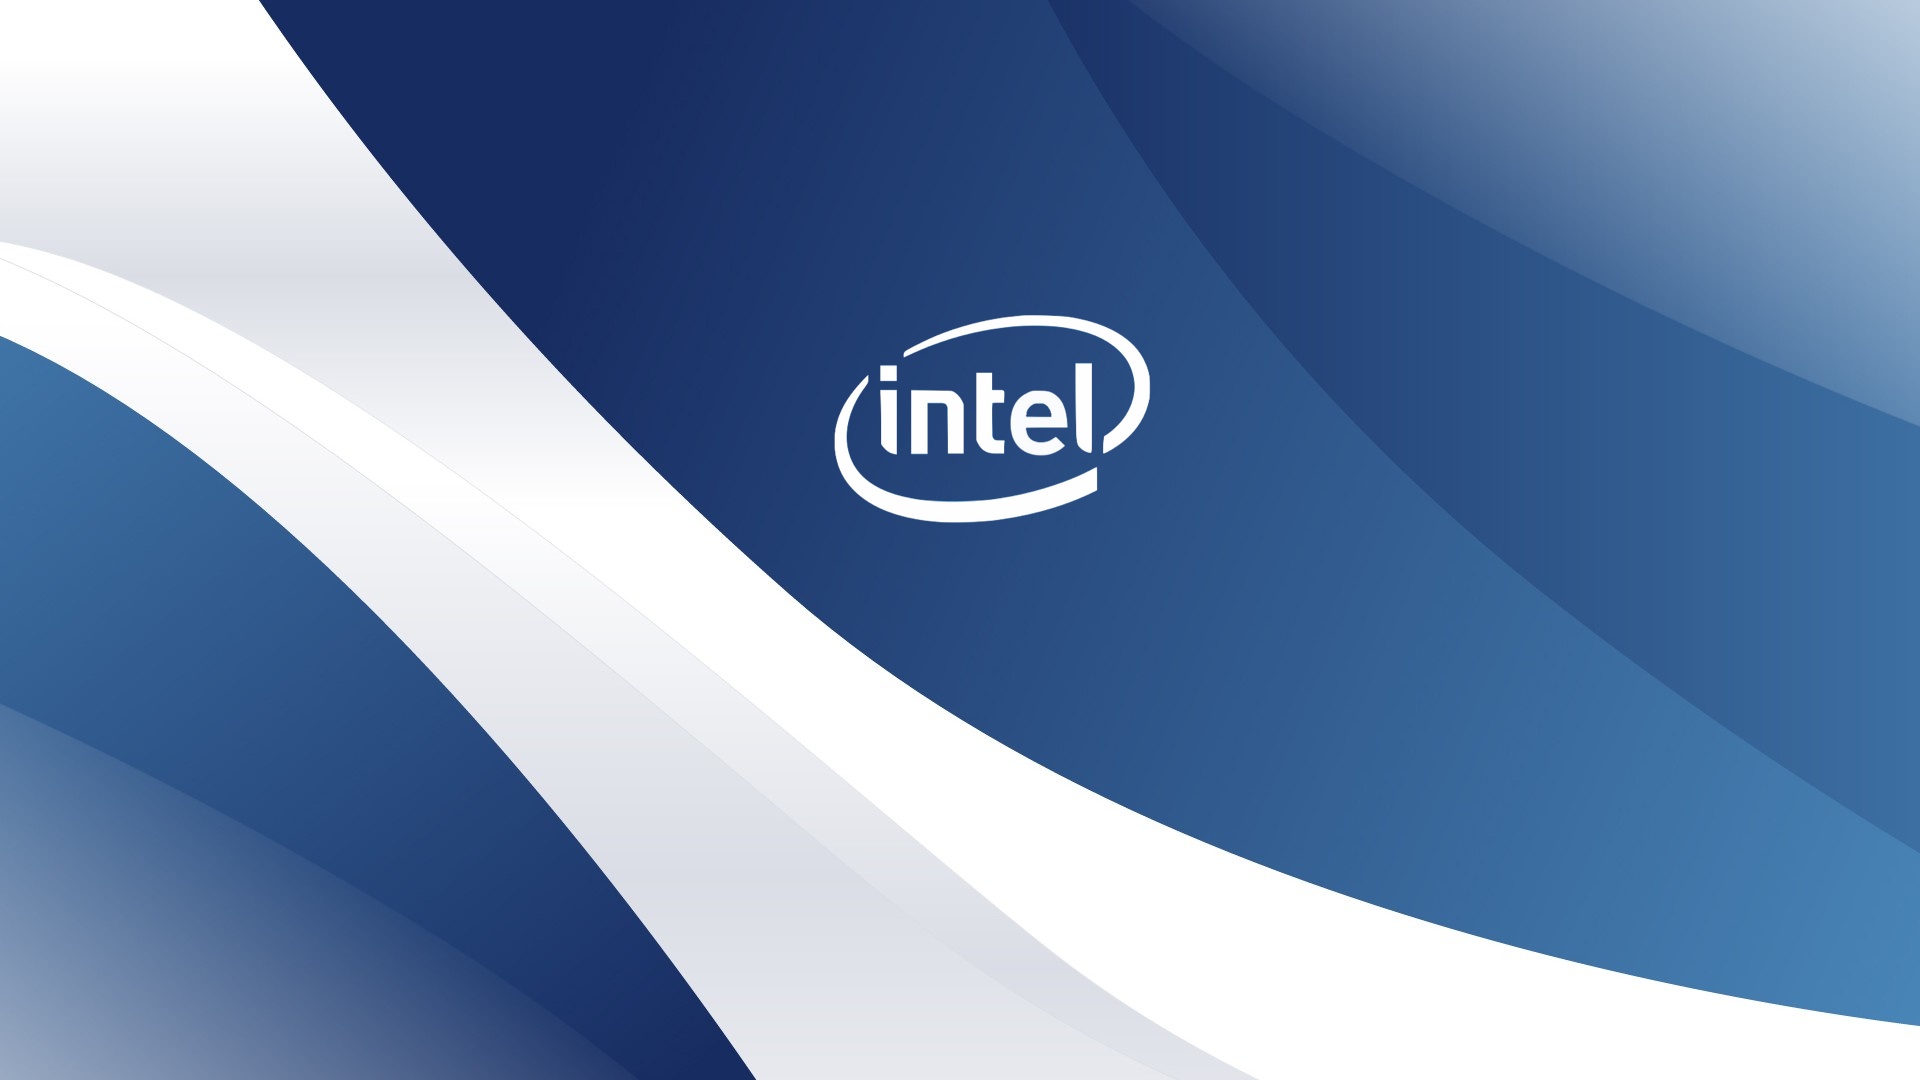 HQ-Intel-Wallpaper